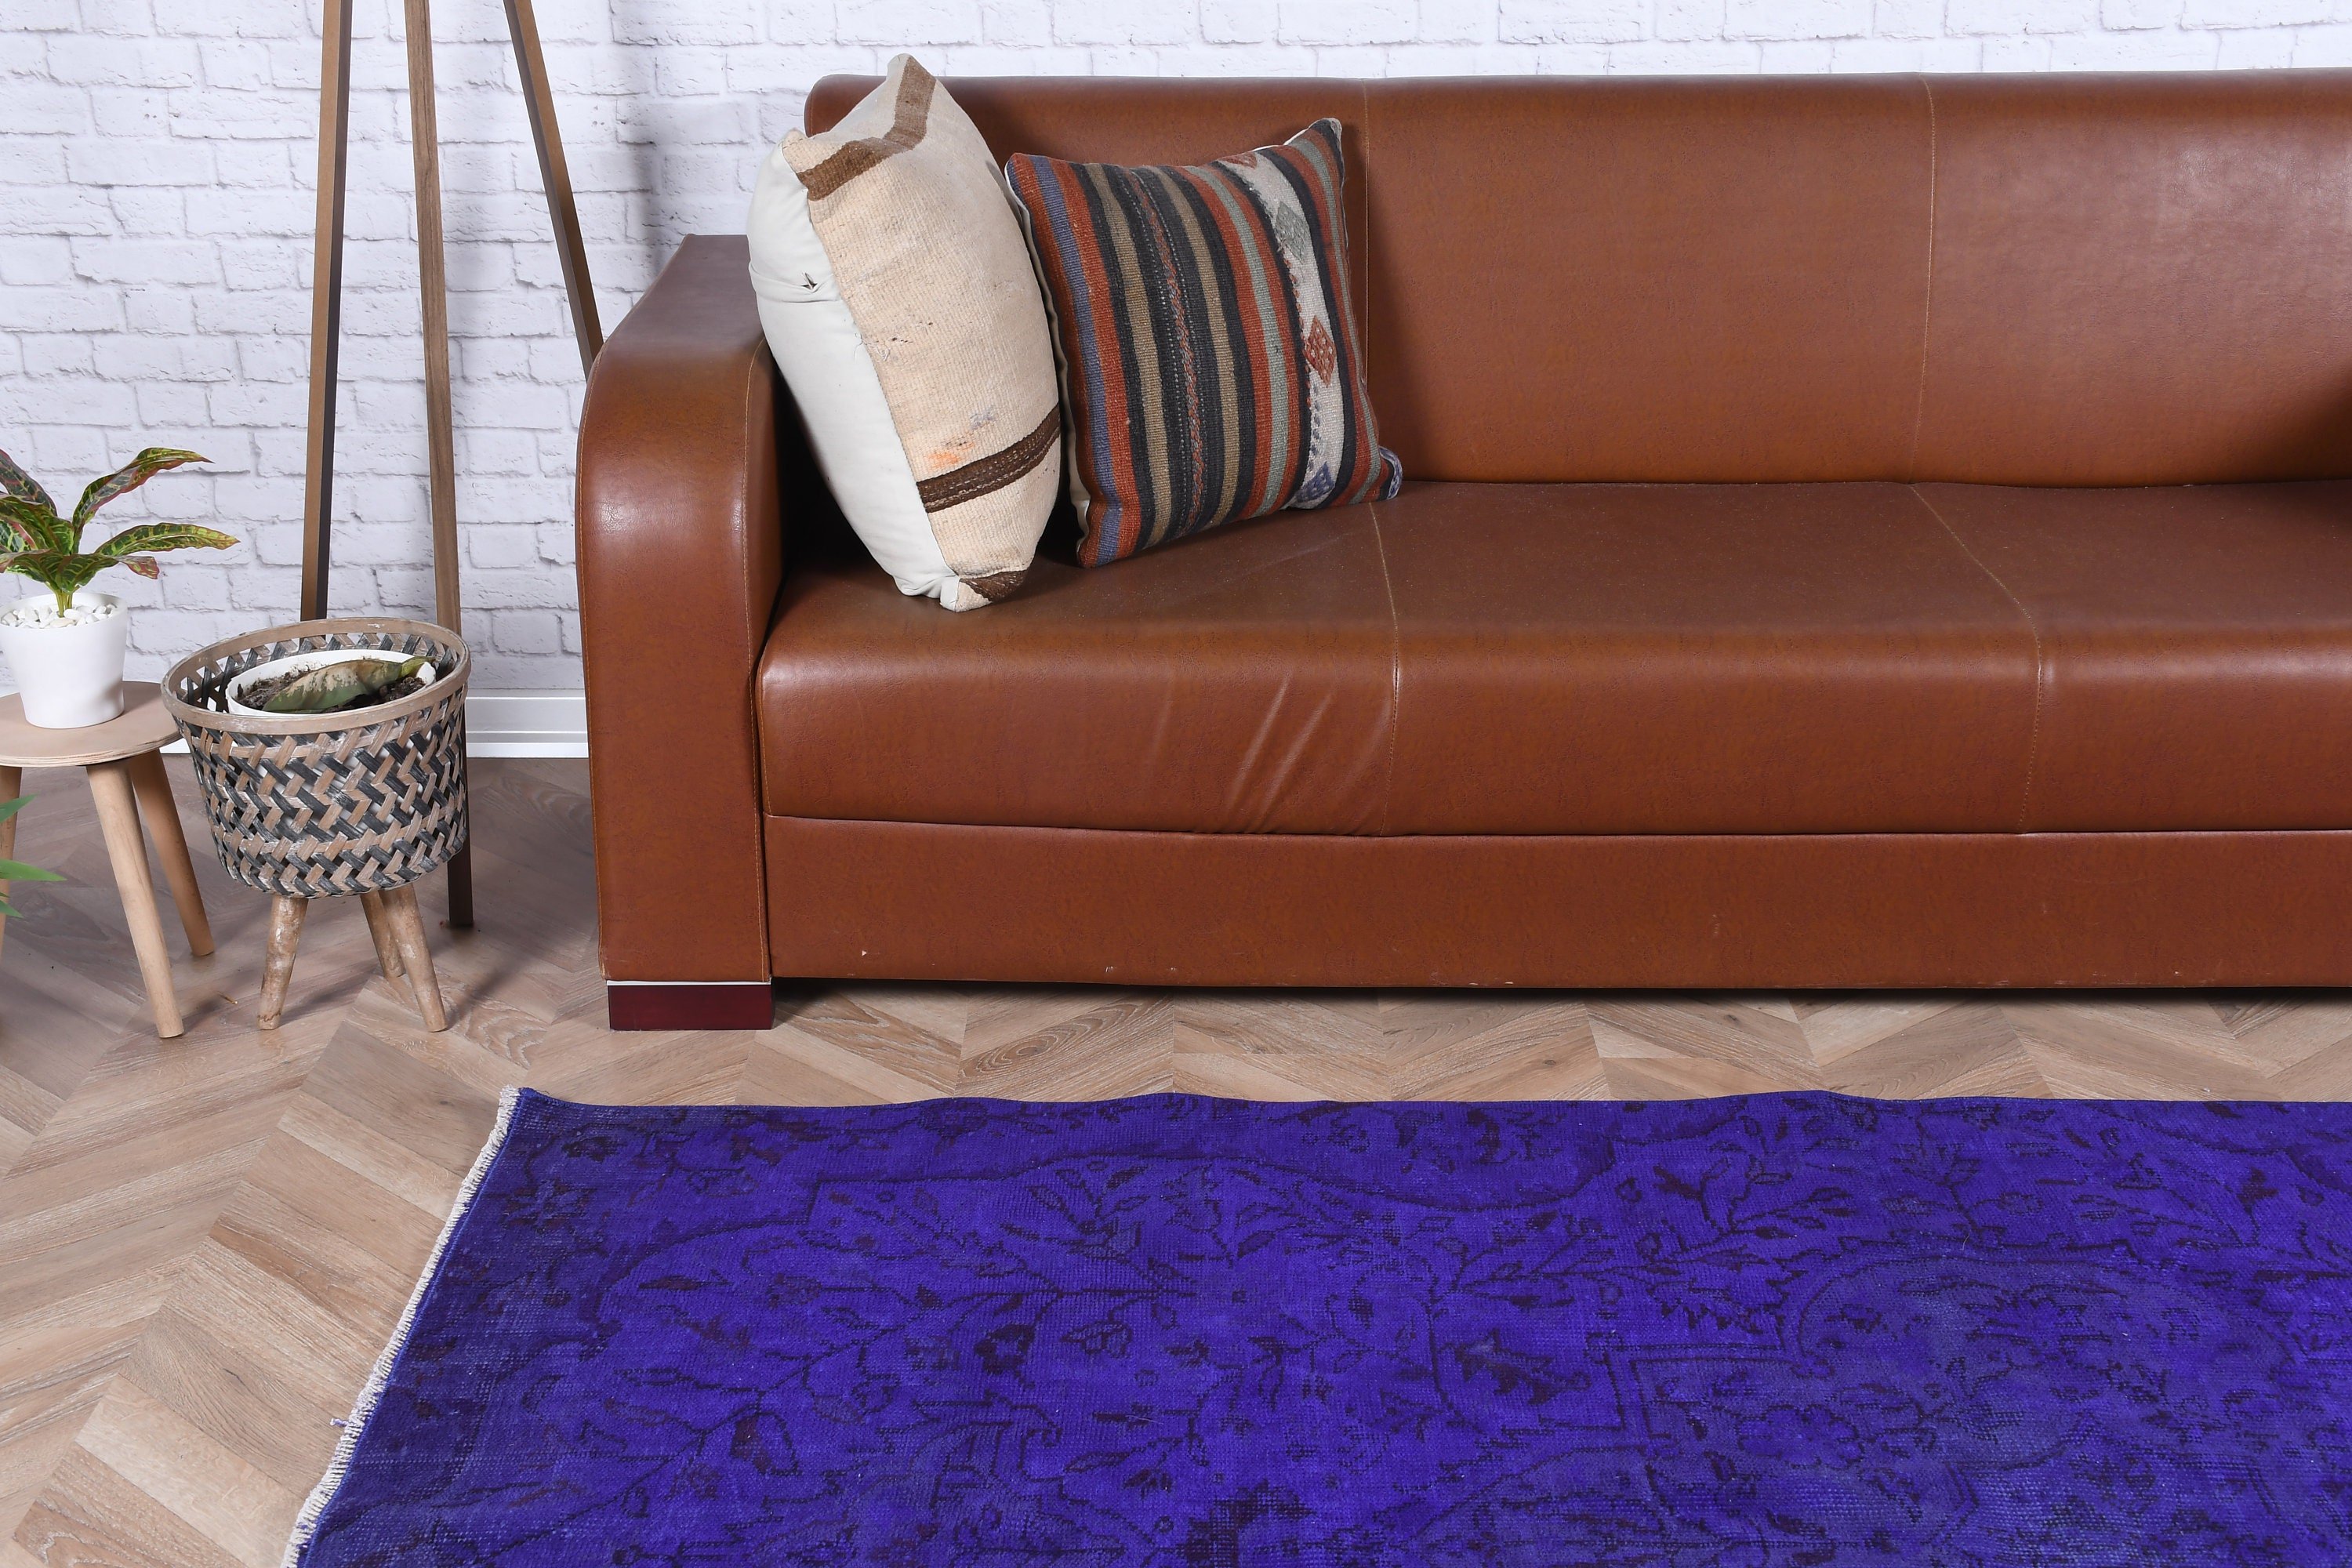 Oriental Rugs, Vintage Rug, Oushak Rug, 4.1x8 ft Area Rug, Purple Floor Rug, Bedroom Rugs, Rugs for Floor, Living Room Rug, Turkish Rugs